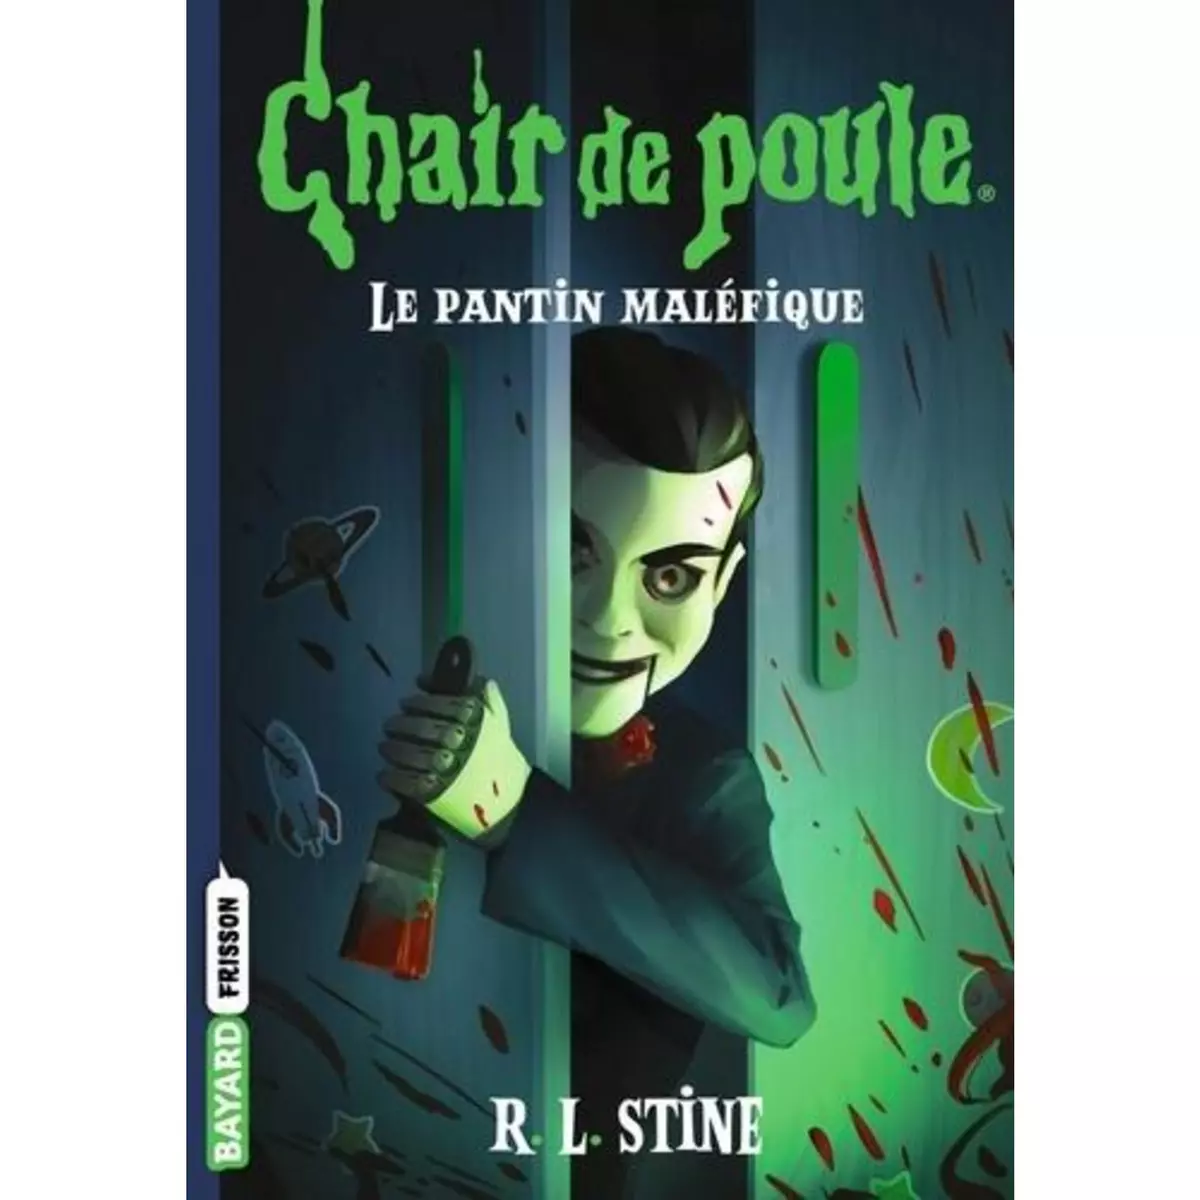  CHAIR DE POULE TOME 14 : LE PANTIN MALEFIQUE, Stine R. L.